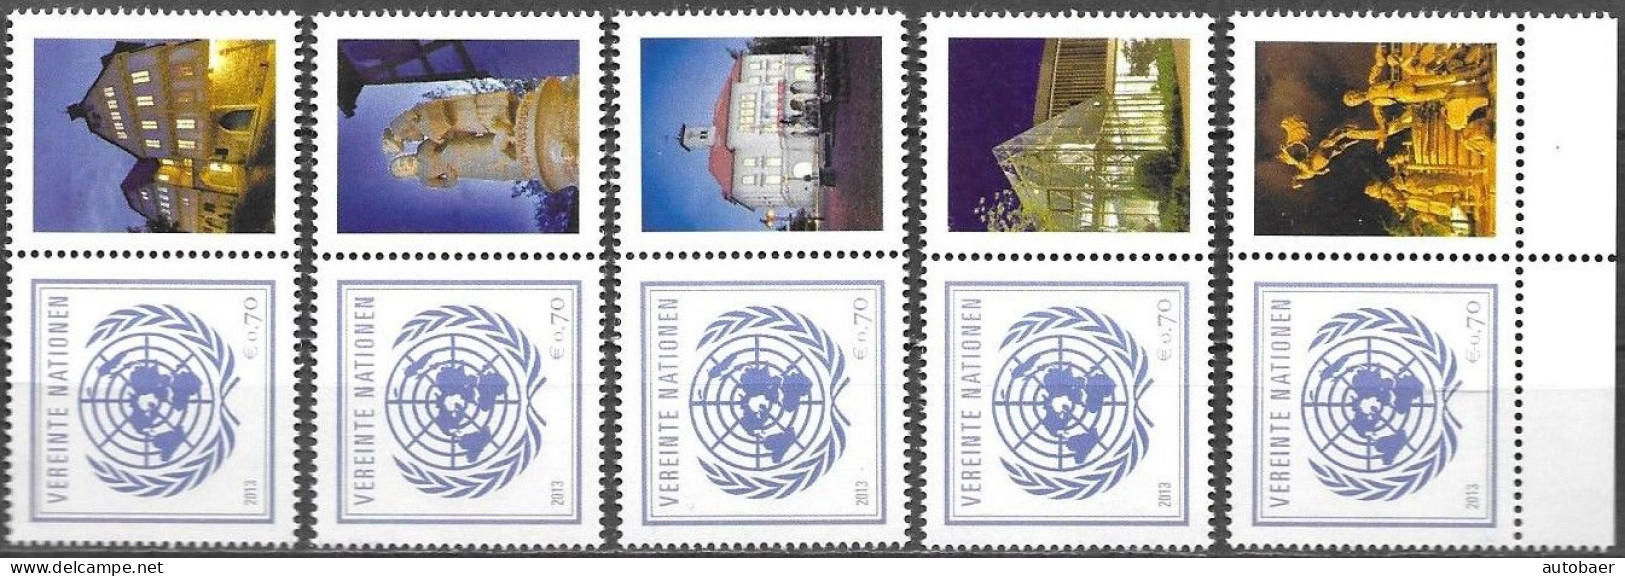 United Nations UNO UN Vereinte Nationen Vienna Wien 2013 Stamp Fair Sindelfingen Mi. 797 X5 MNH ** Neuf - Nuovi